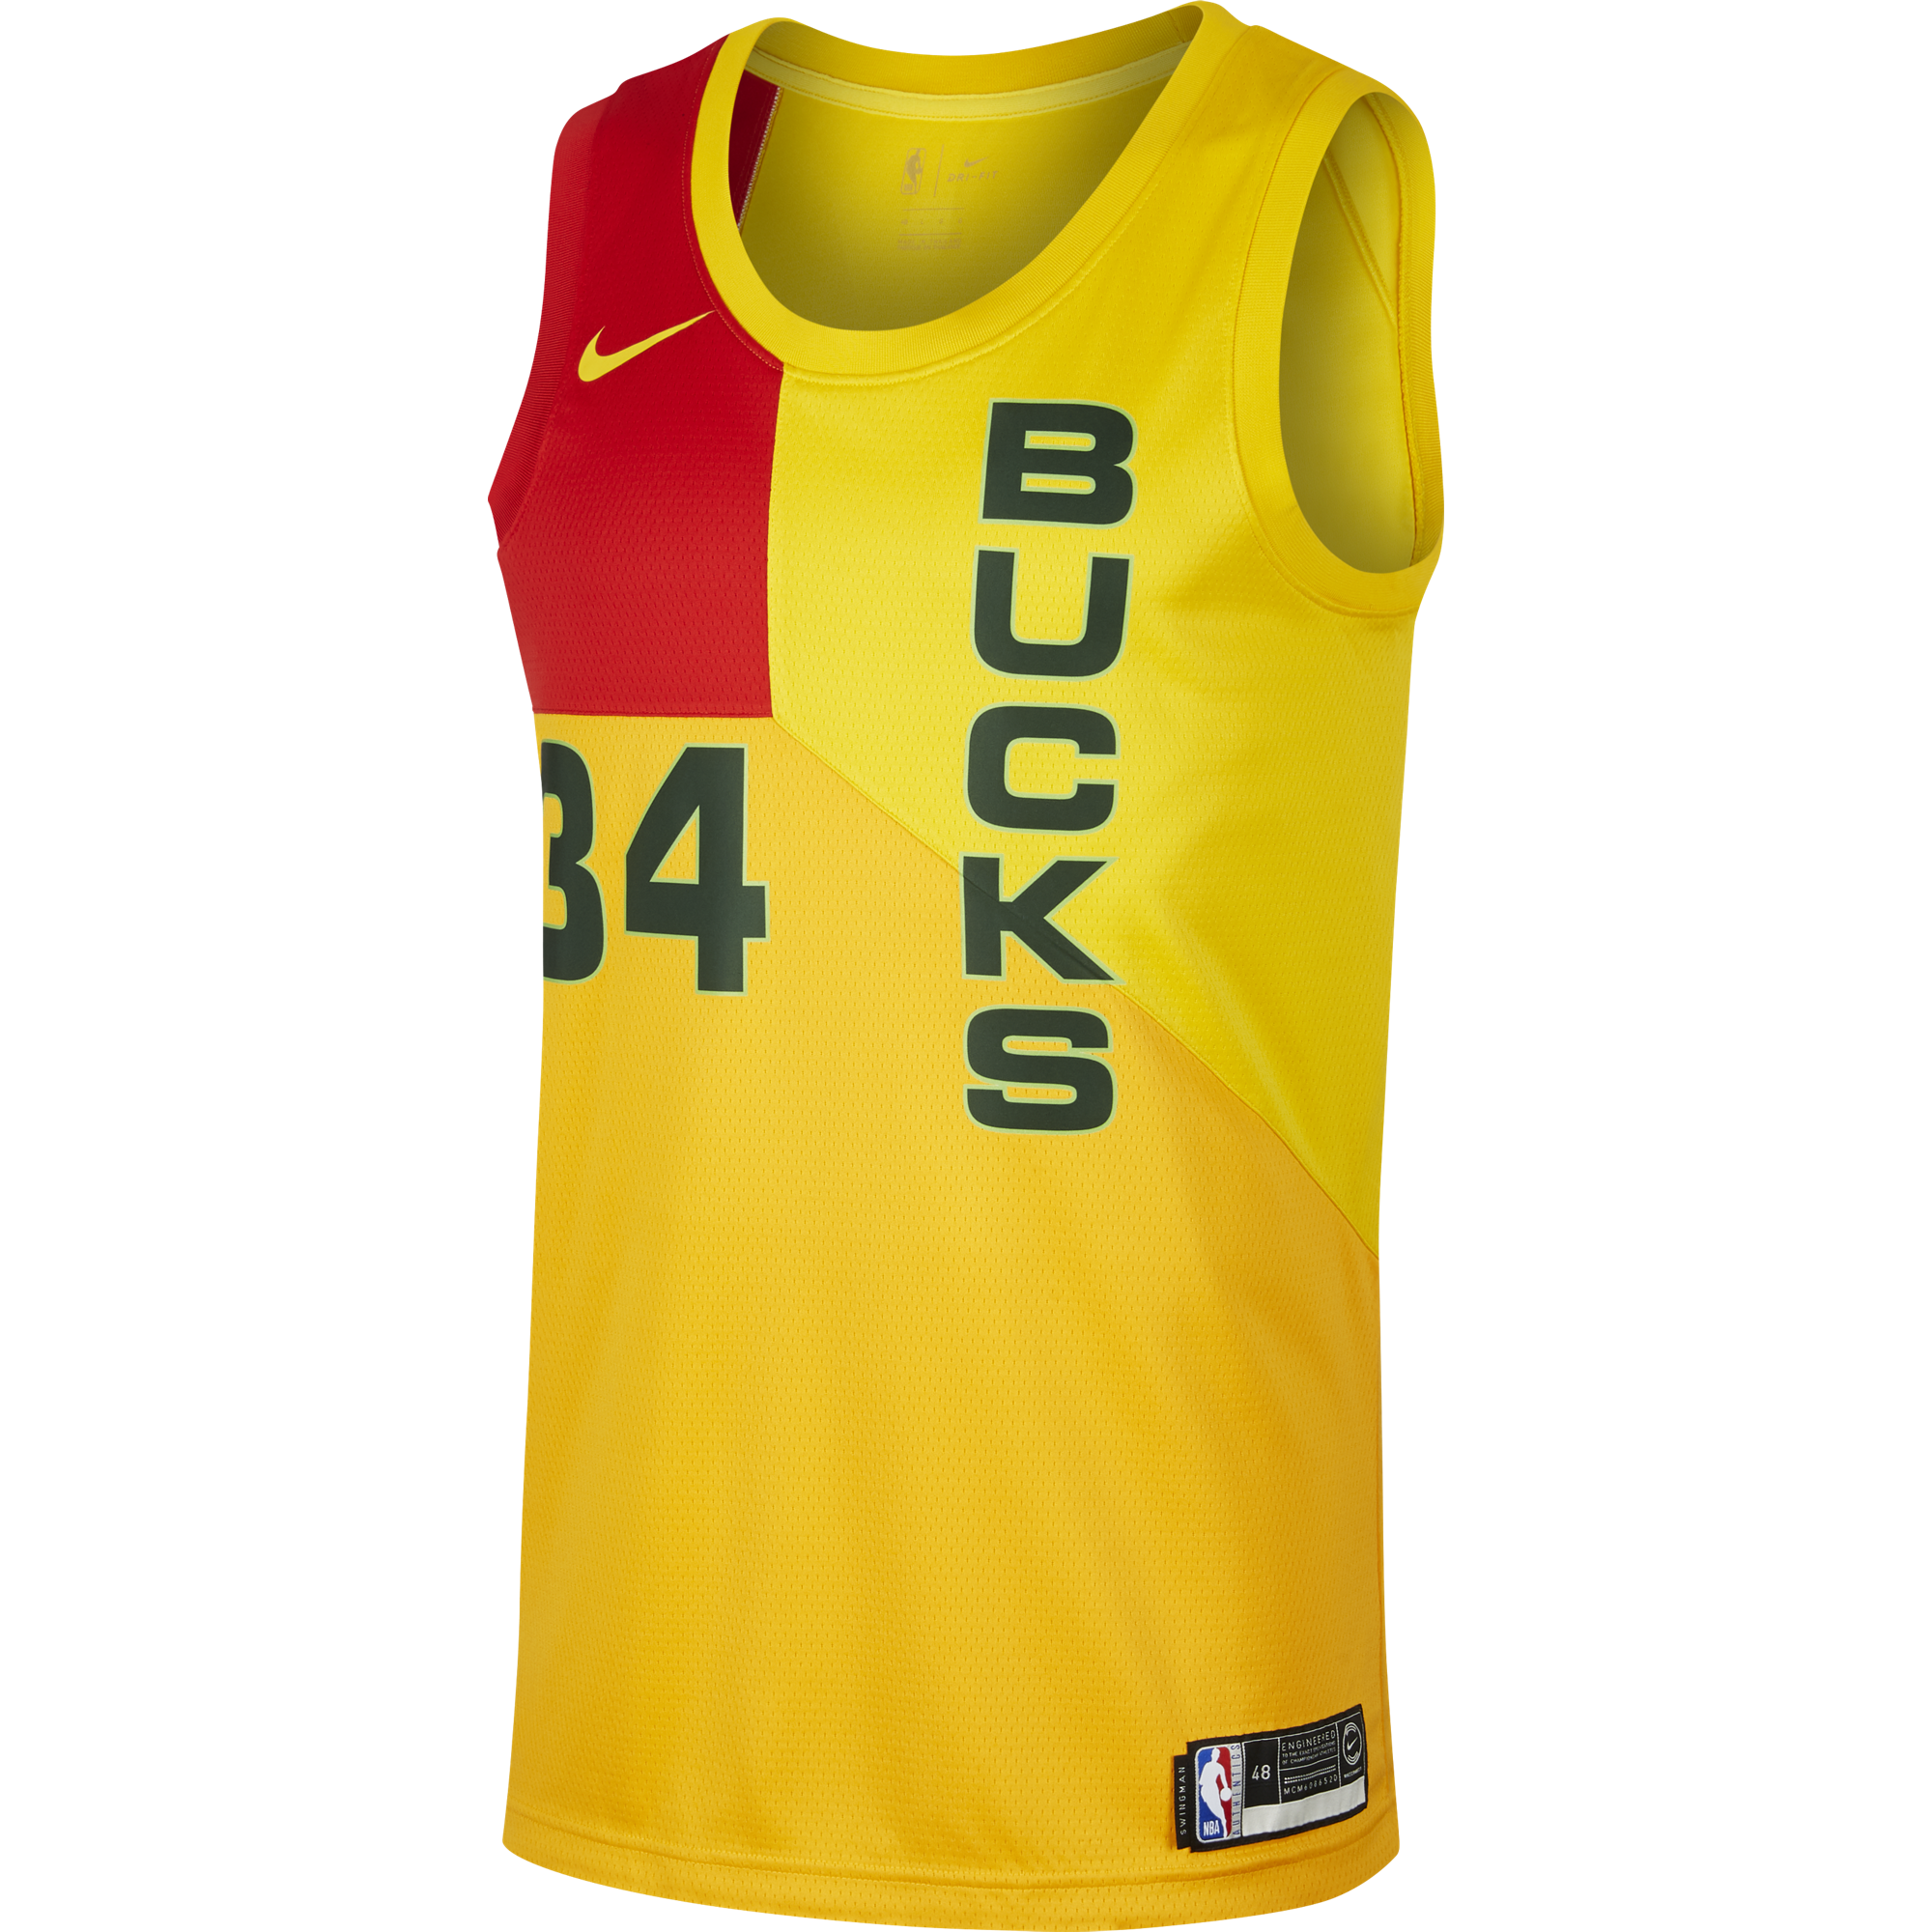 Nike Nba Milwaukee Bucks Giannis Antetokounmpo Swingman Jersey Fur 85 00 Kicksmaniac Com